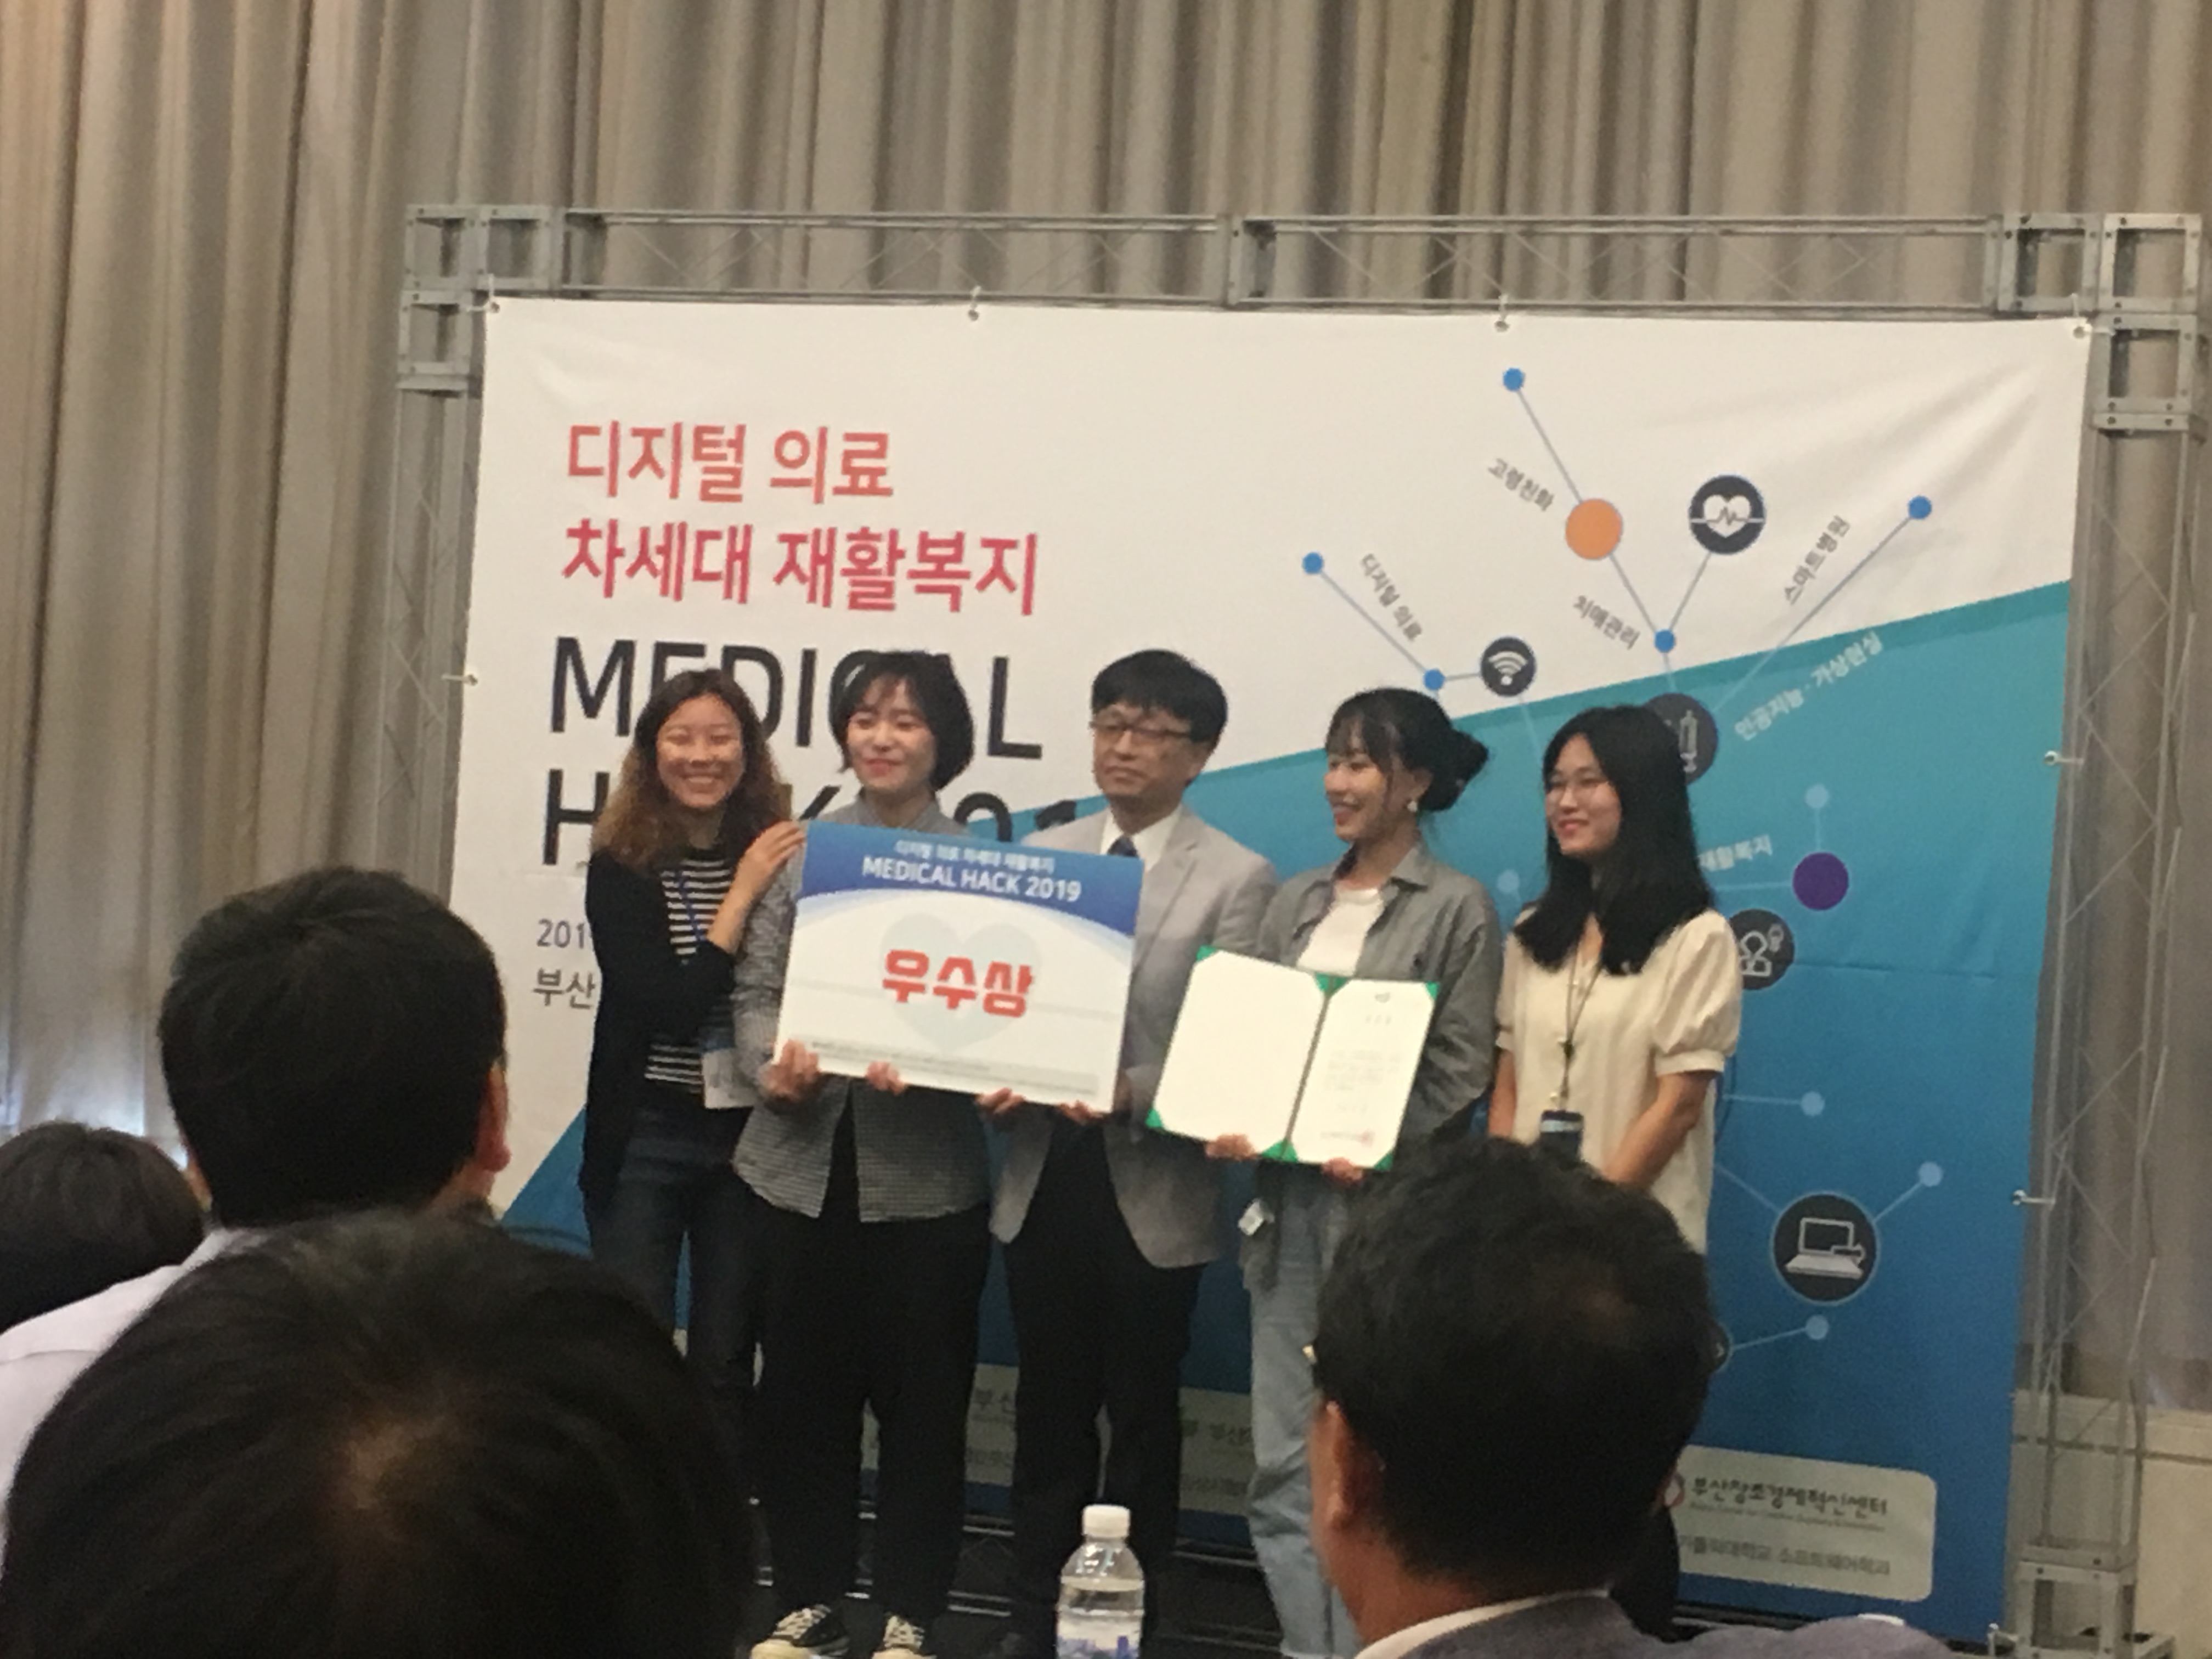 디지털 의료· 차세대 재활복지 「MEDICAL HACK 2019」우수상 수상